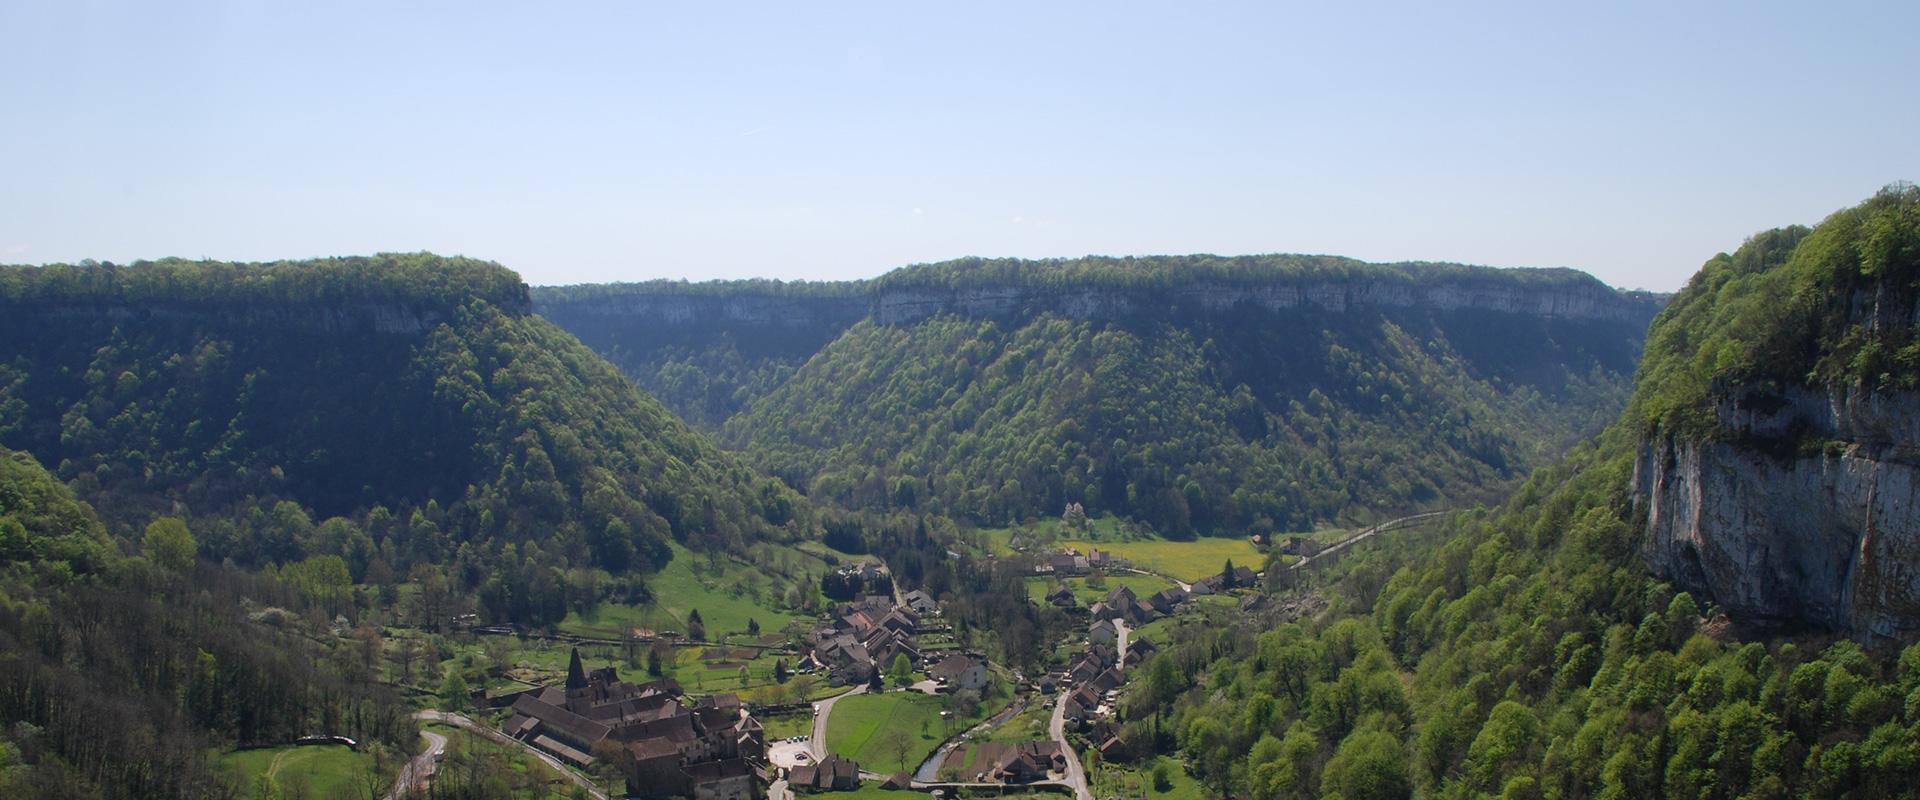 Le village de Baume-les-Messieurs, Jura